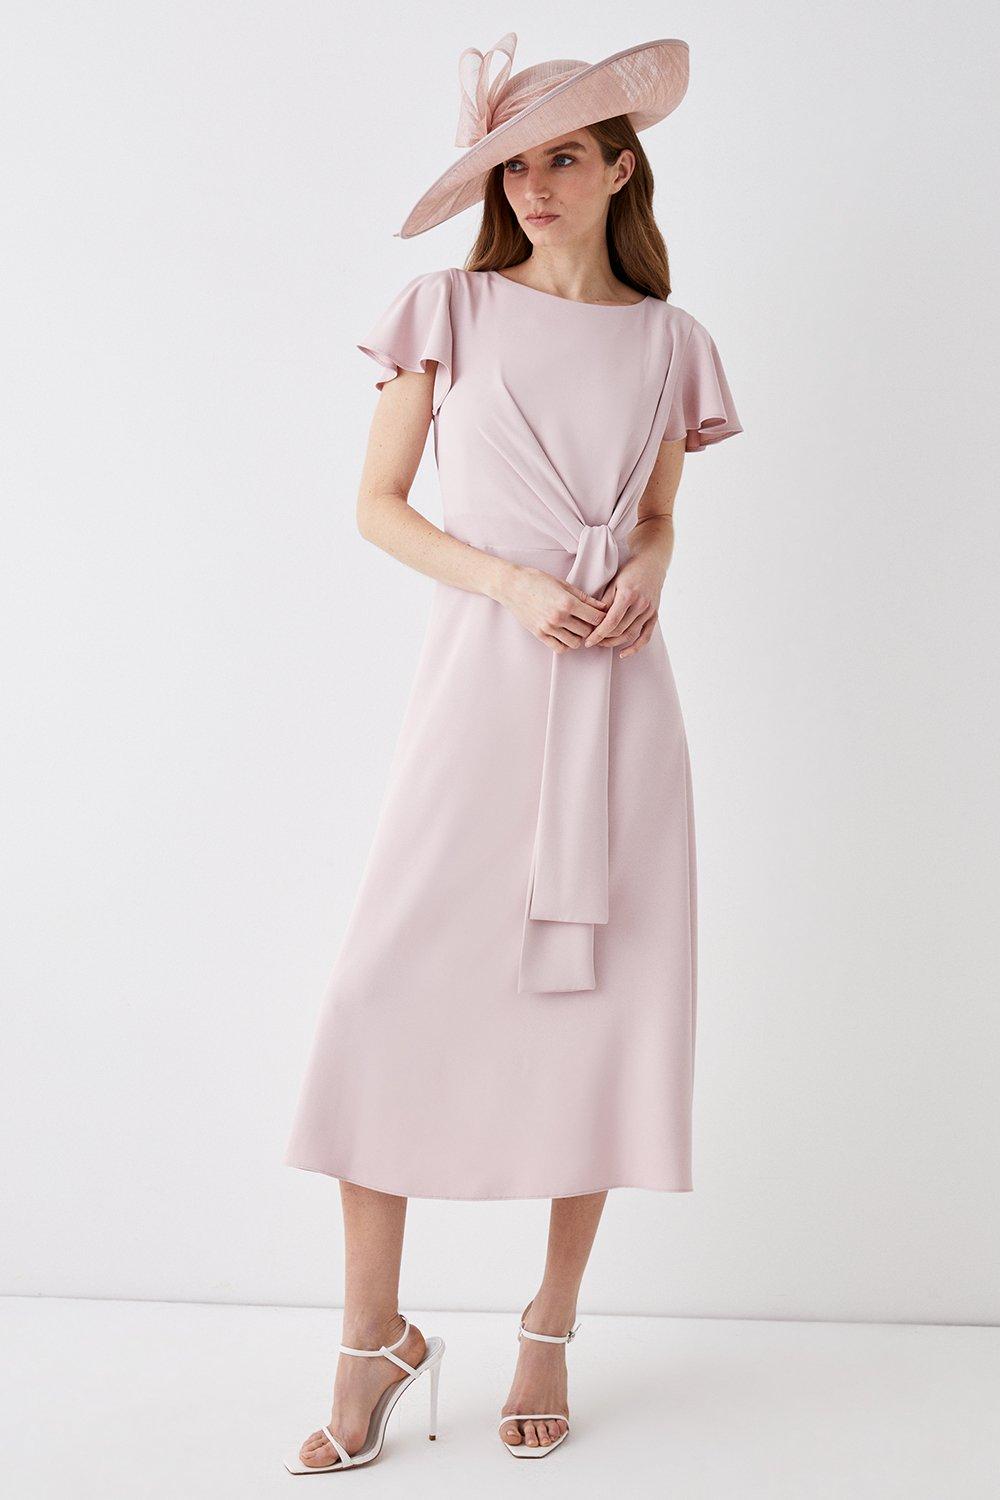 Dresses | Lisa Tan Tie Waist Midi Dress | Coast